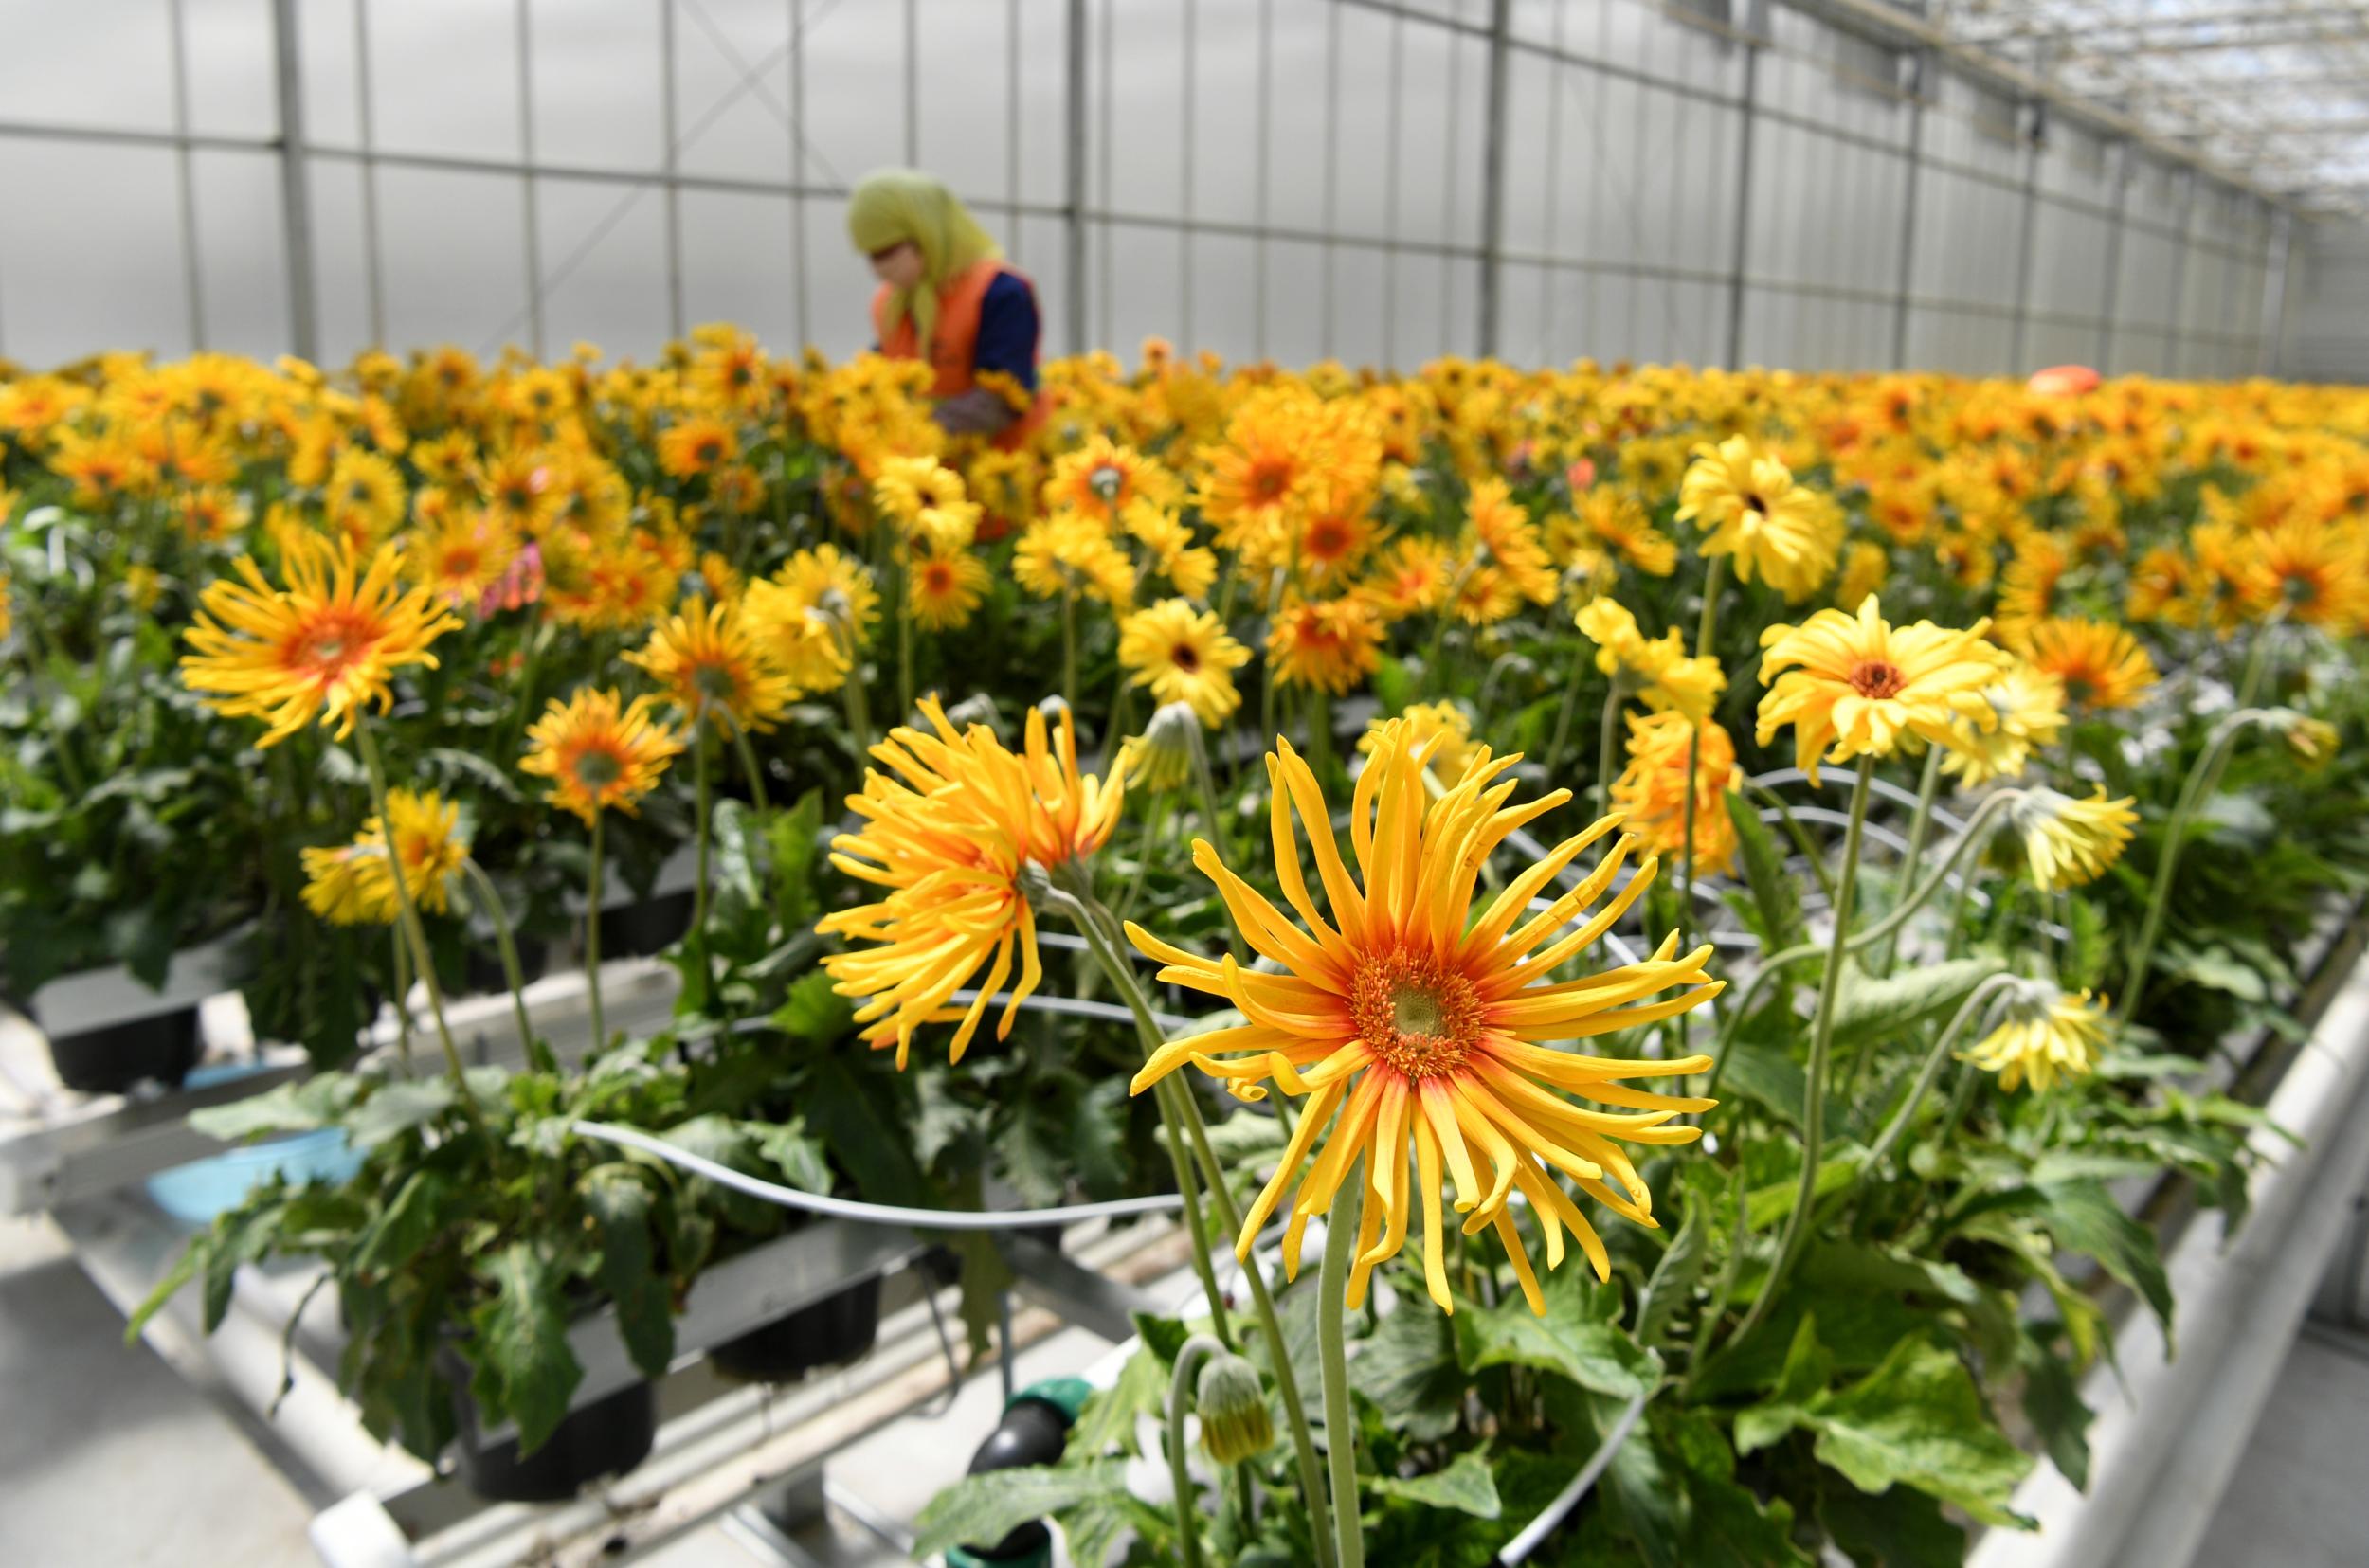 四月中旬以来,兰州新区现代农业示范园花卉产业各类花卉进入盛产